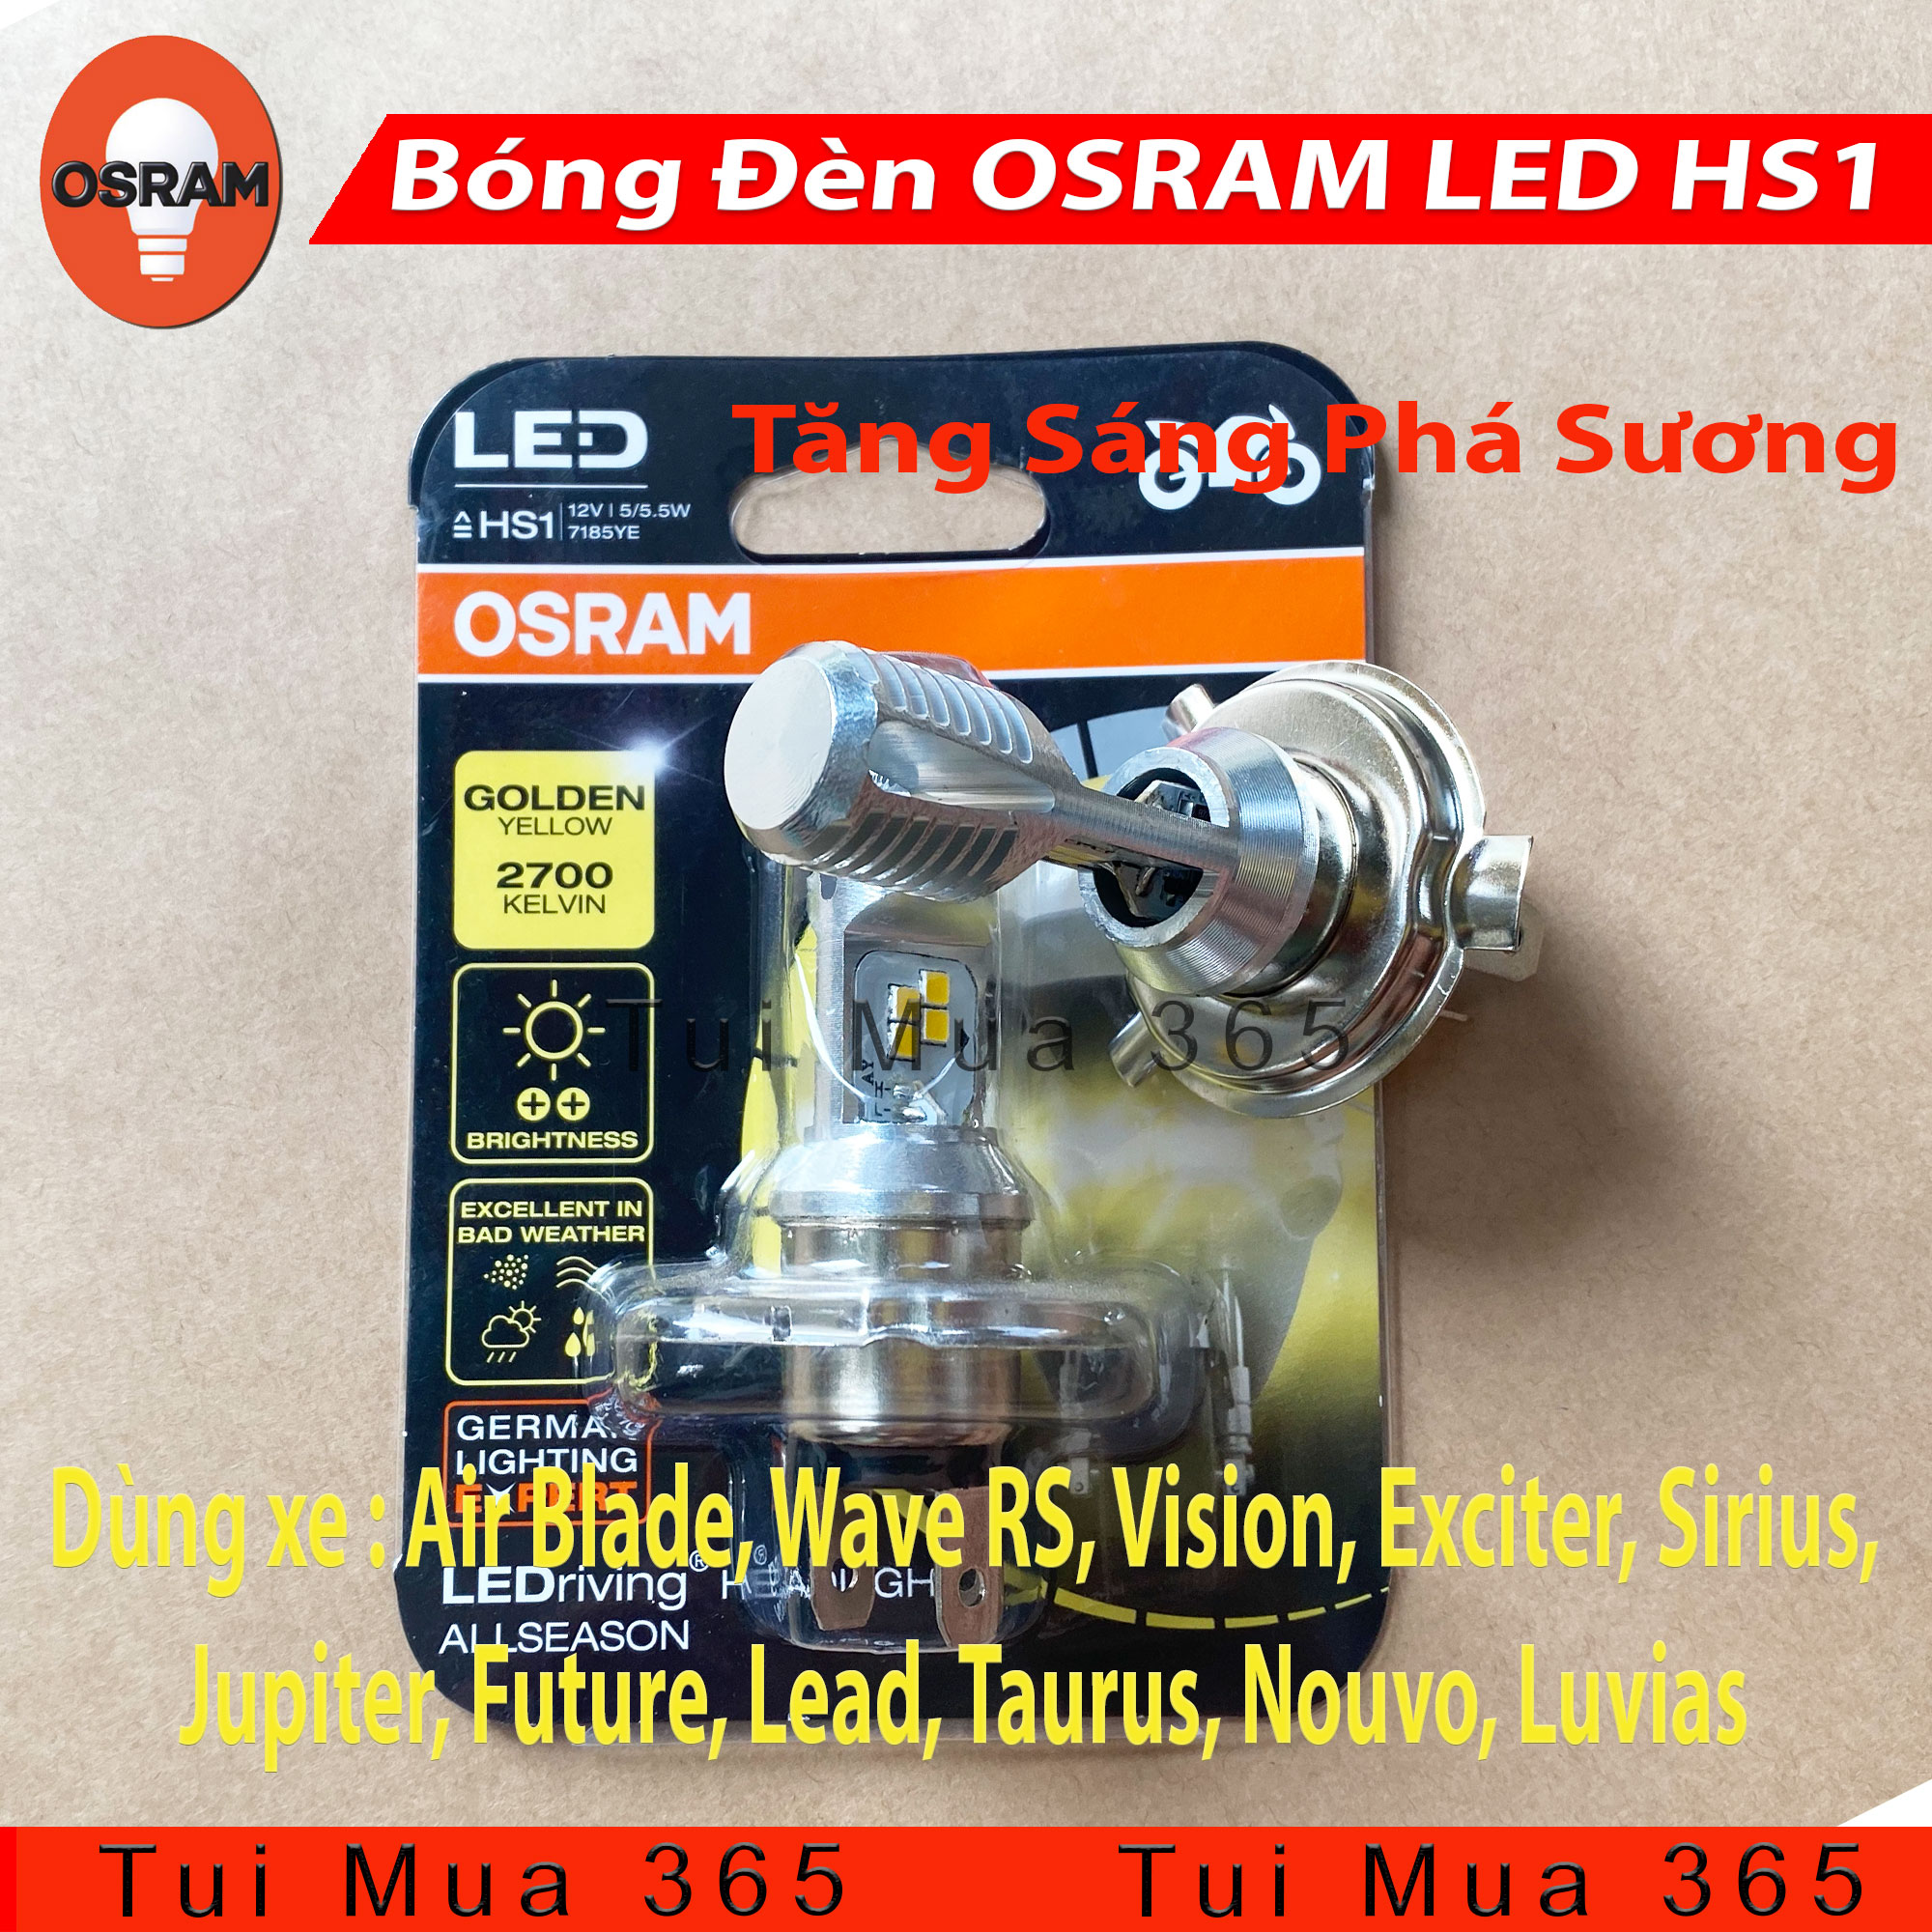 Bóng đèn LED tăng sáng phá sương OSRAM HS1 Air Blade, Wave RS, Vision,  Exciter, Sirius, Jupiter, Future, Lead, Taurus, Nouvo, Luvias - 100% Hàng  chính hãng - CHẤT LƯỢNG - UY TÍN - AN TÂM